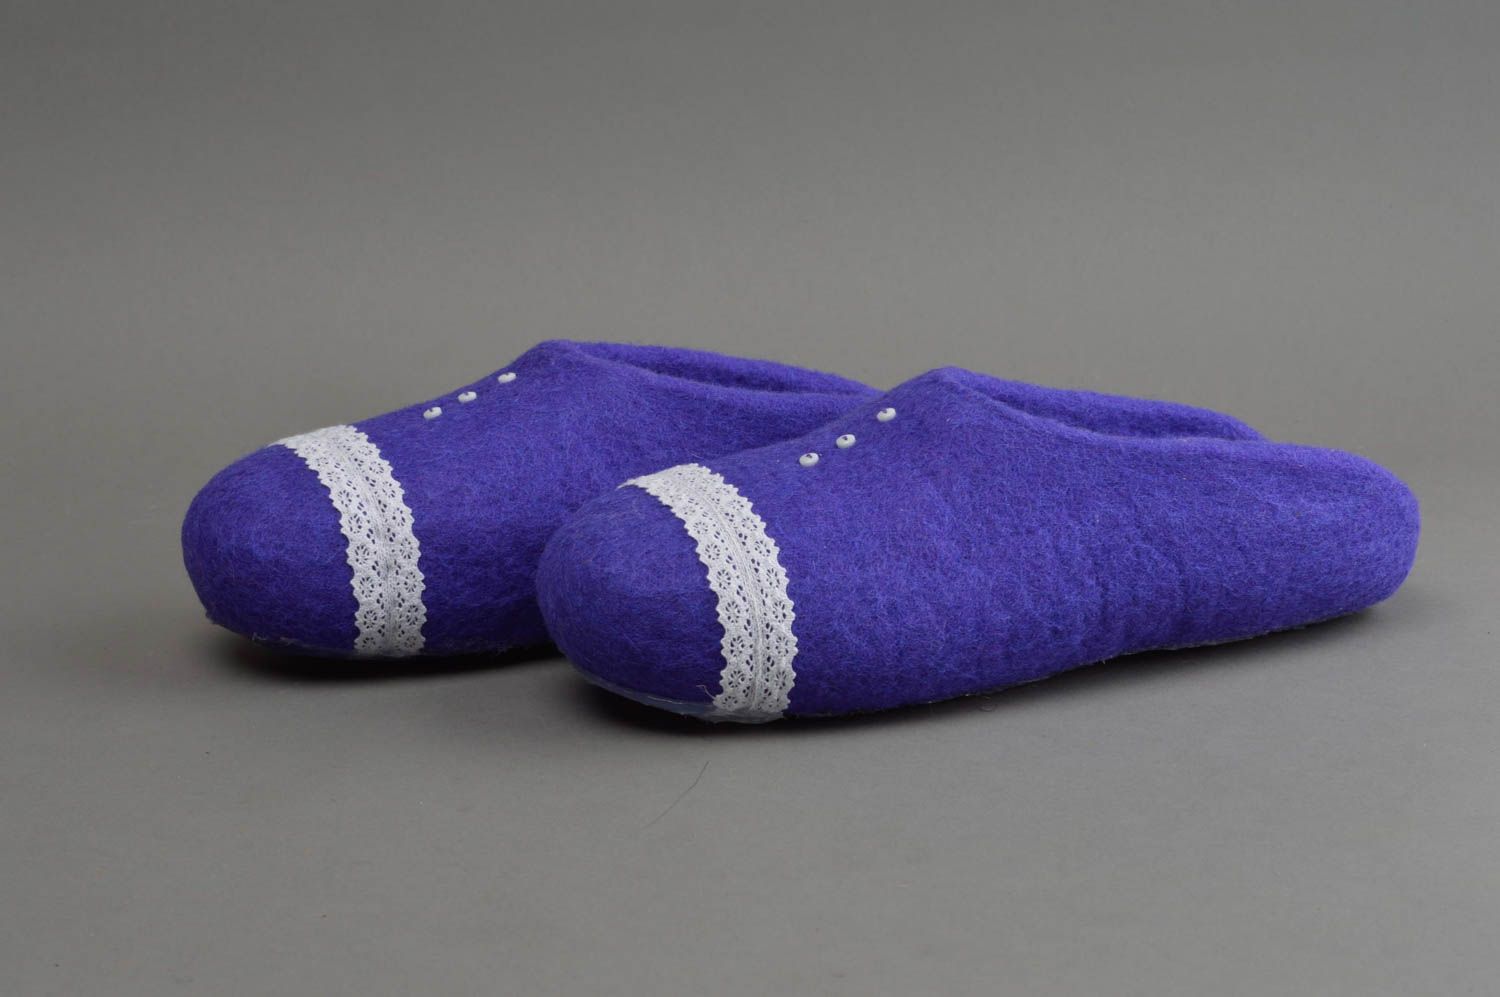 Pantoufles faites main bleues avec dentelles en laine naturelle pour femme photo 2